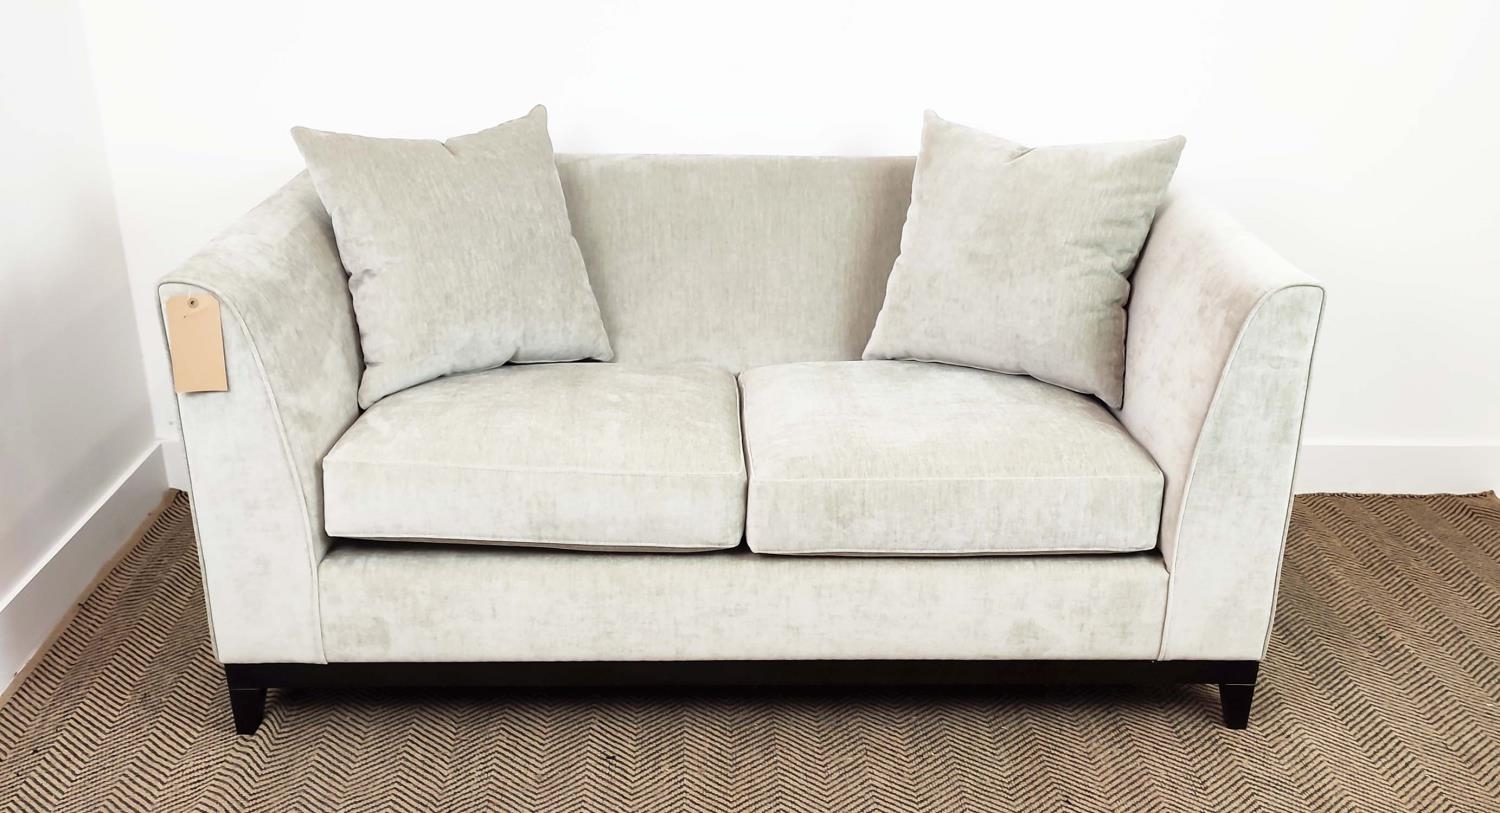 SOFA, grey fabric upholstered, ebonised supports, 160cm x 85cm x 75cm.